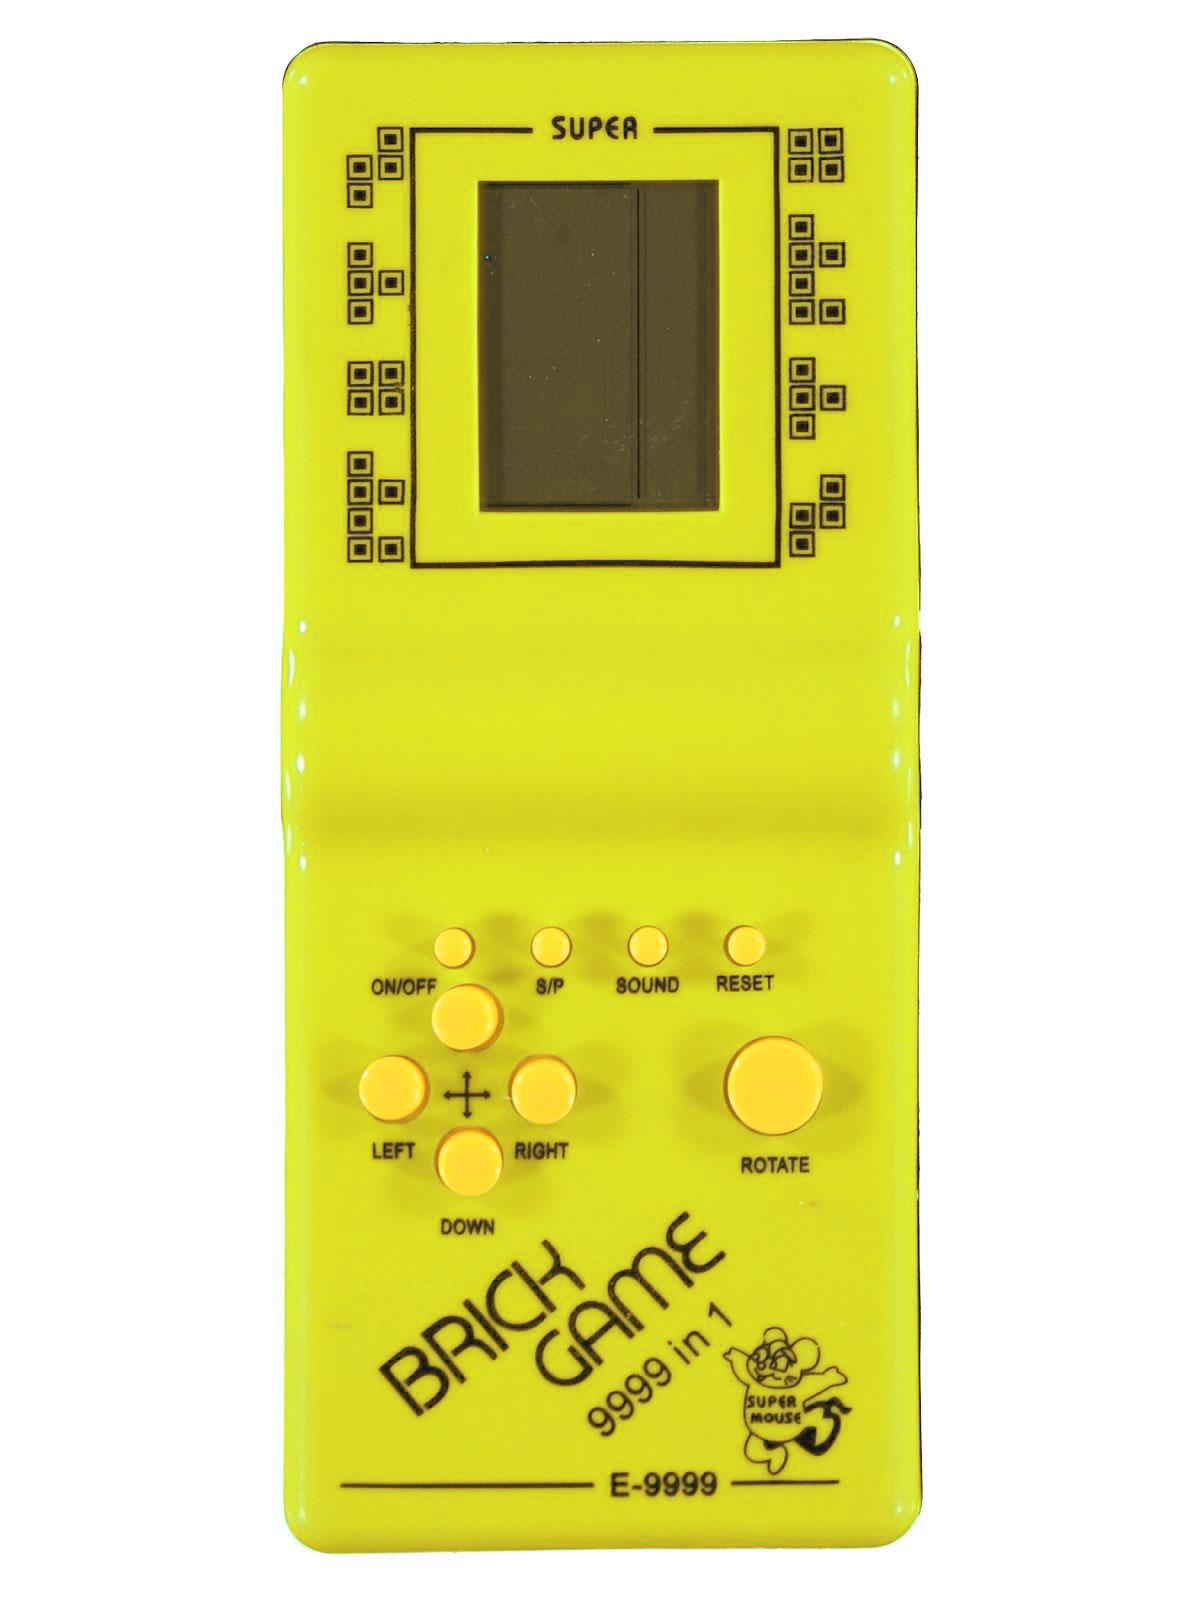 Can Oyuncak Kutulu Tetris Sarı